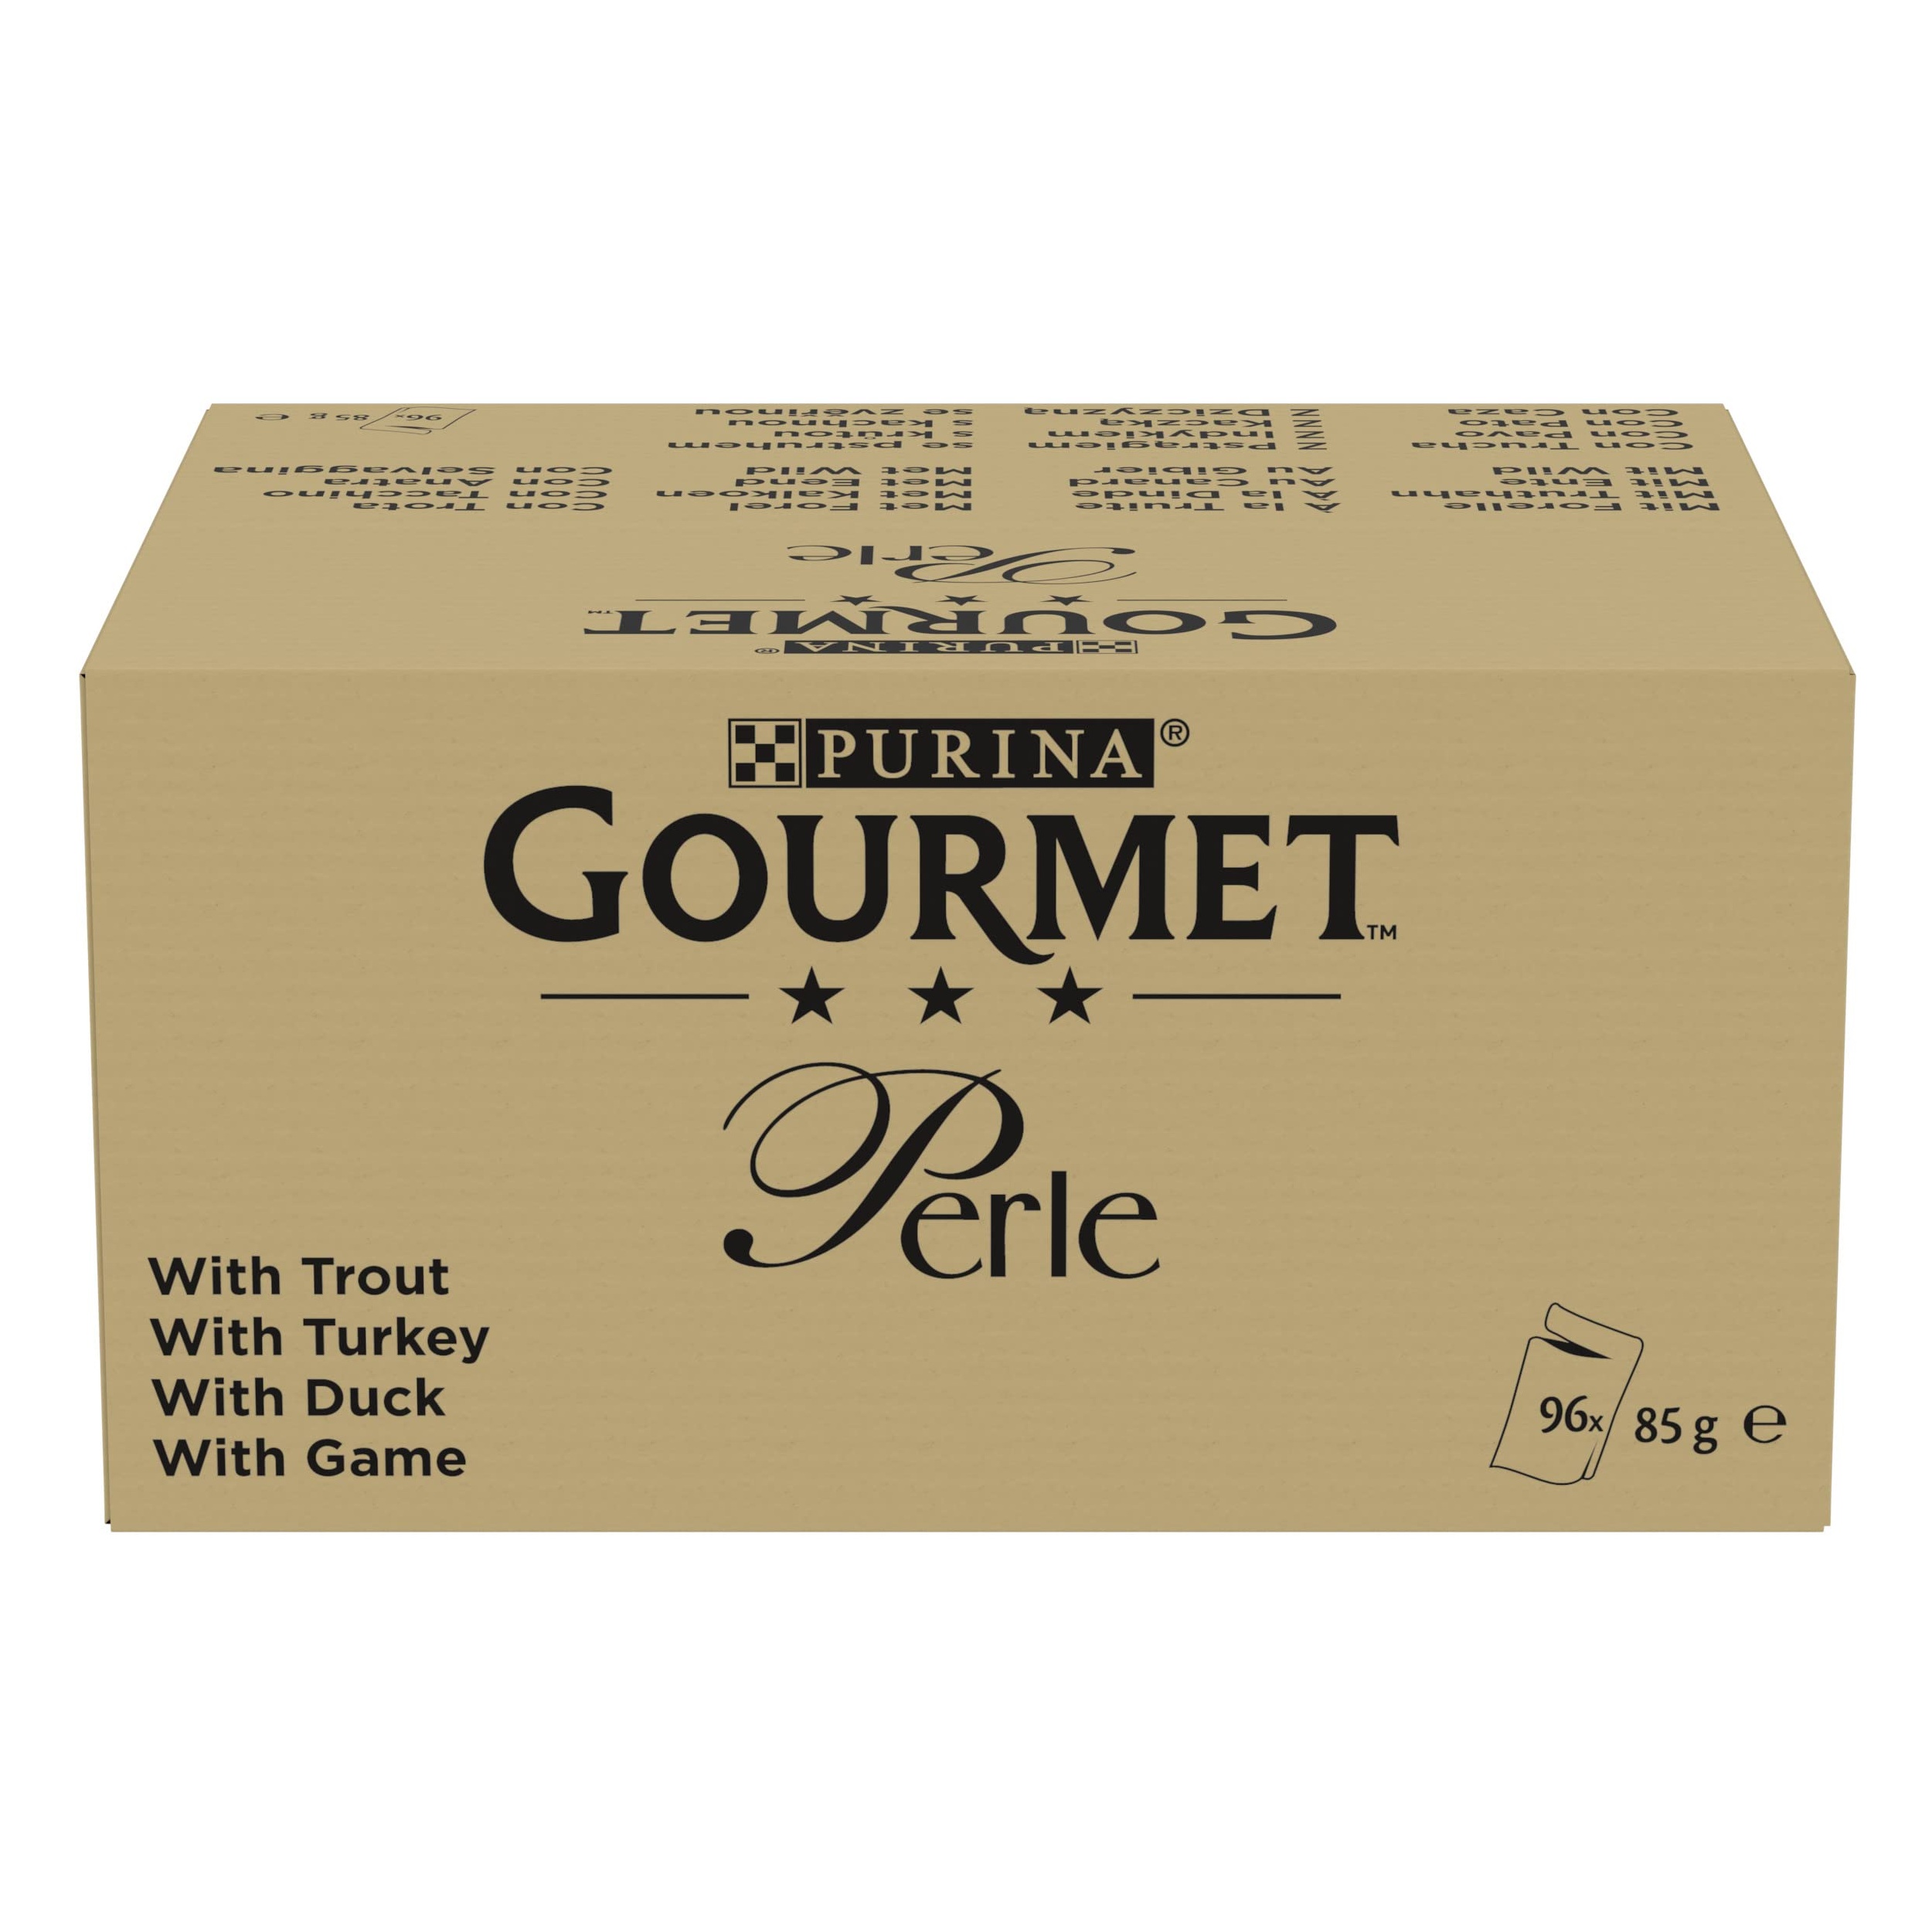 Bild von Gourmet Perle Еrlesene Streifen in Gelee Sorten-Mix 96 x 85 g